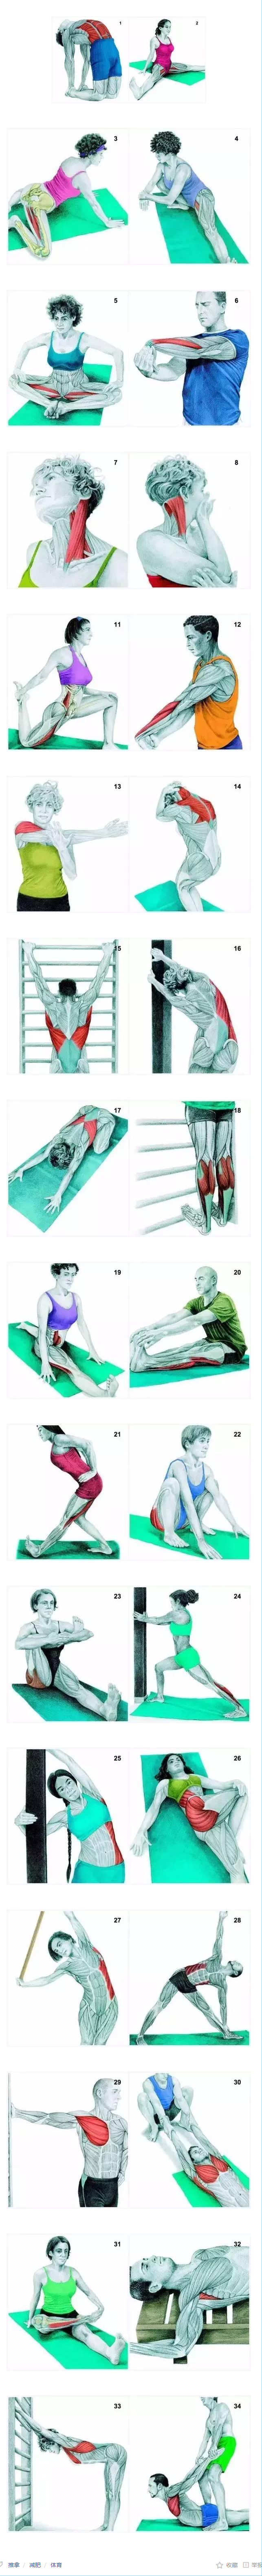 大腿肌肉放松方法图解图片